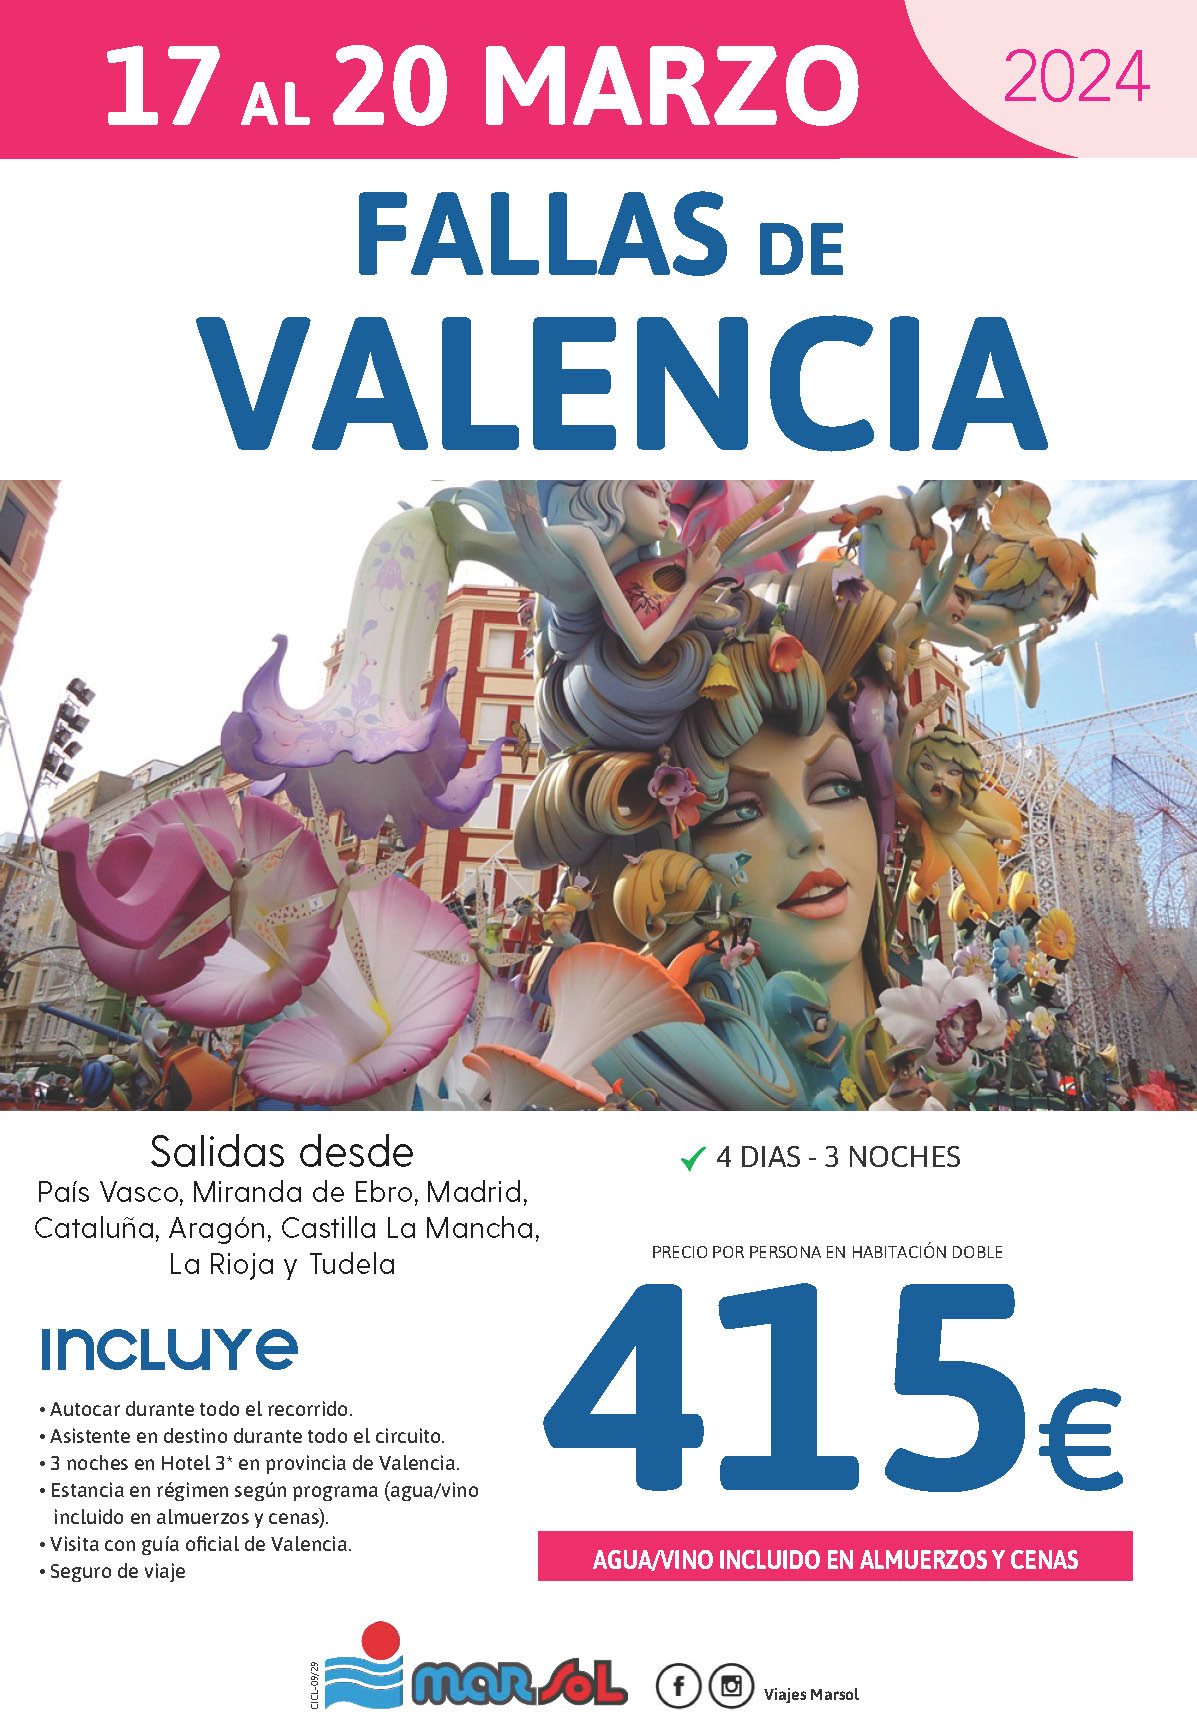 Oferta Marsol Fallas de Valencia 2024 4 dias salidas 17 marzo desde el Norte de España